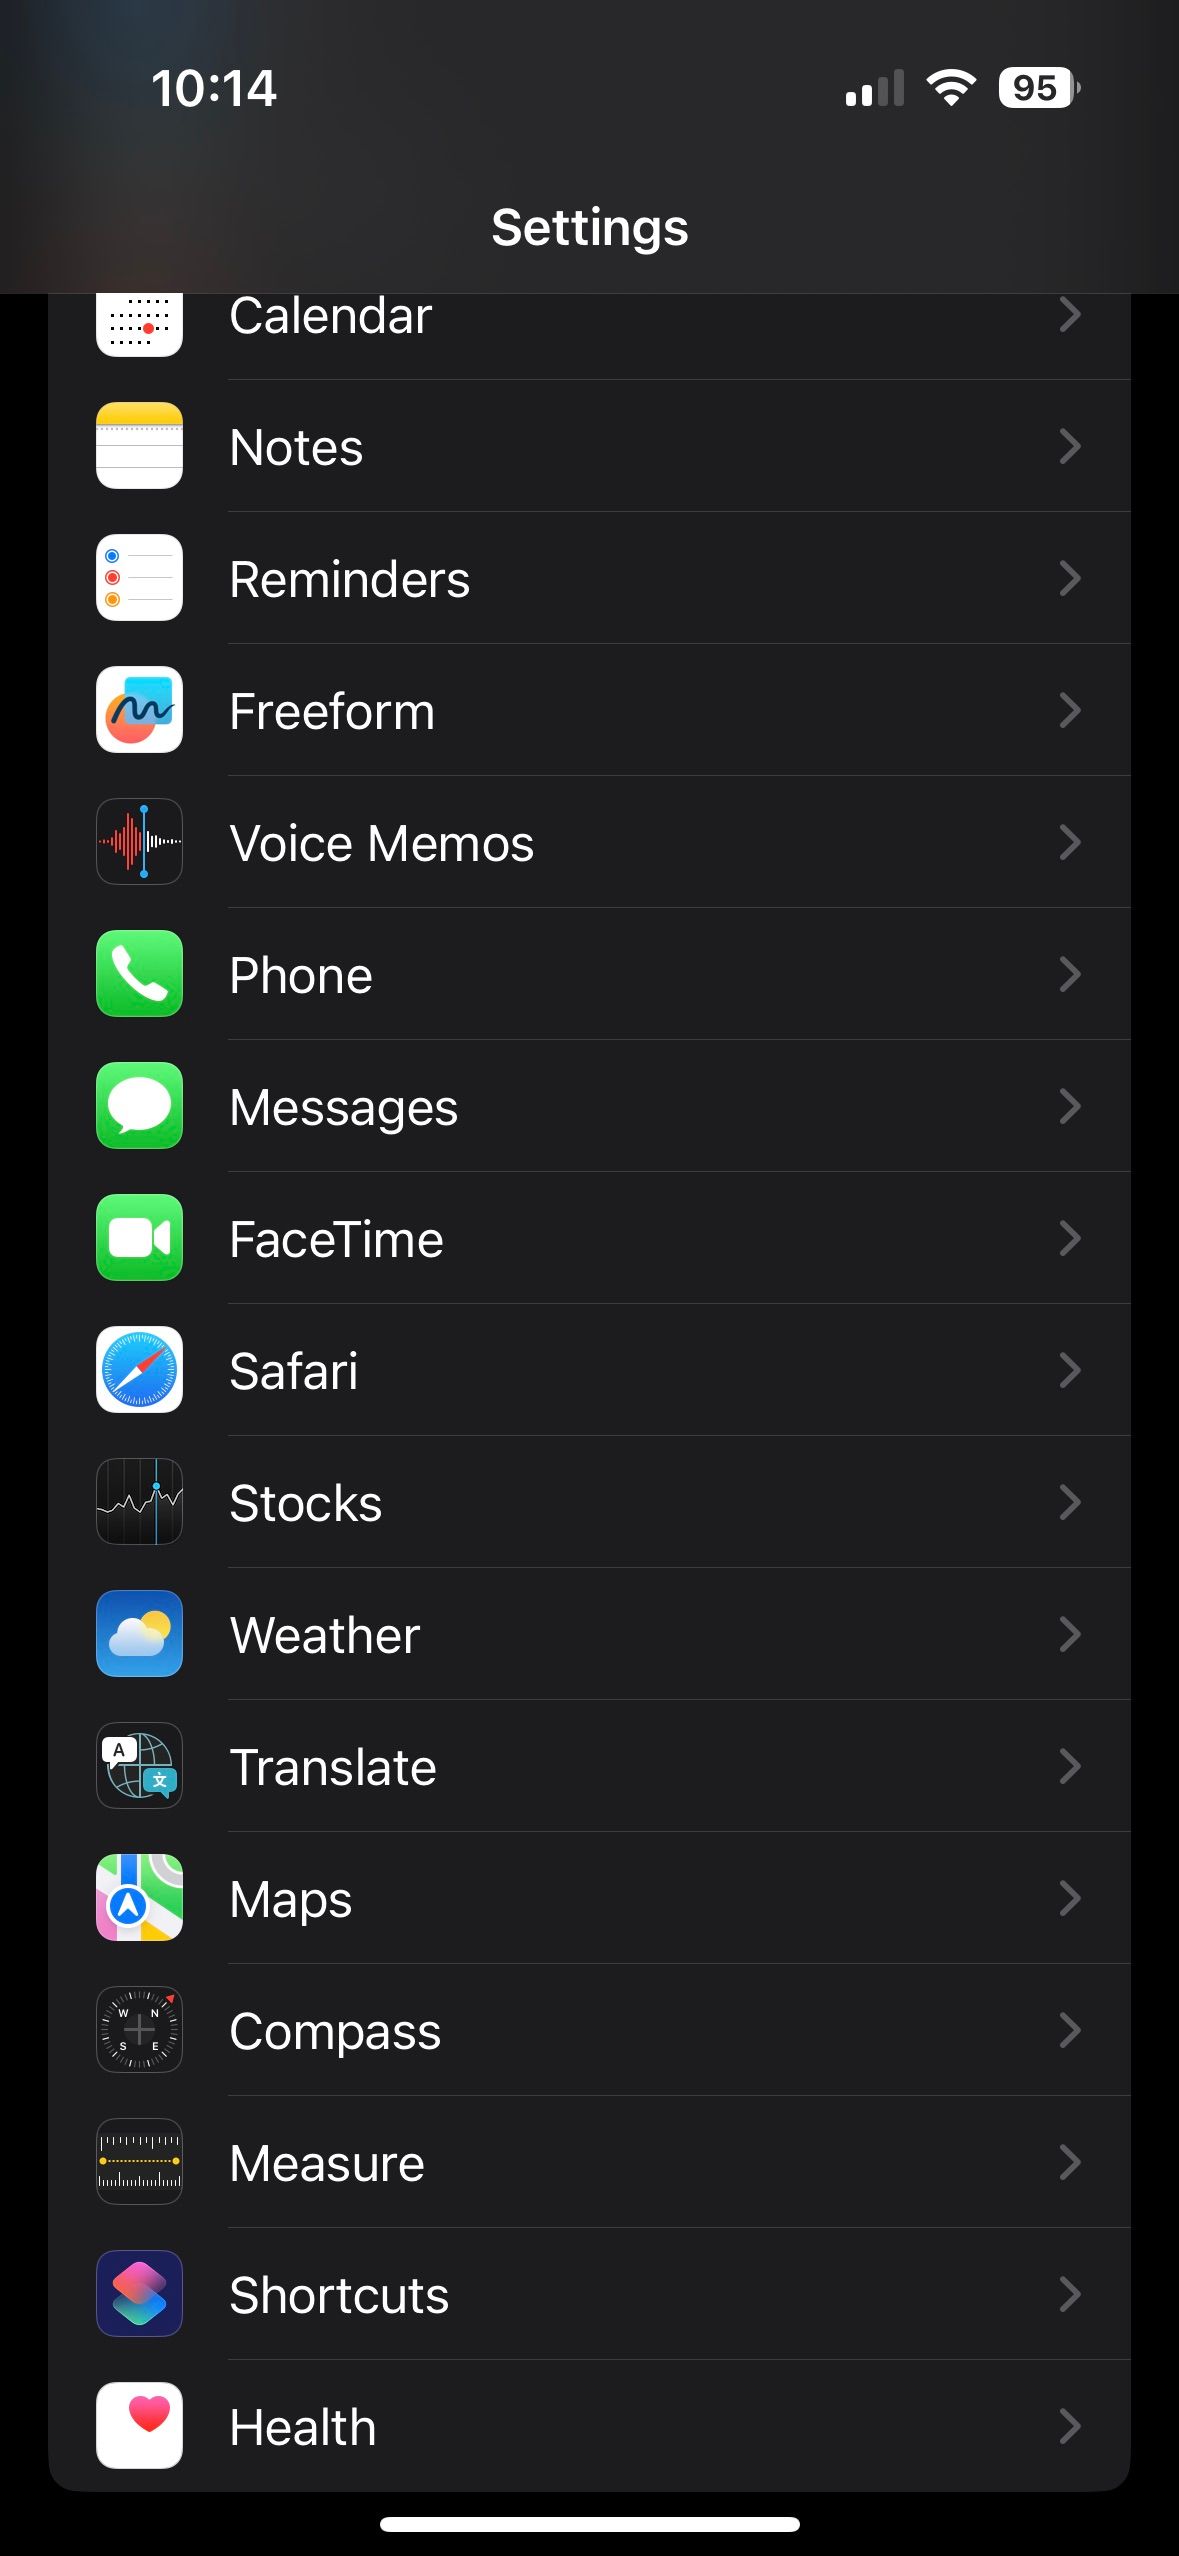 Safari section in iPhone Settings app